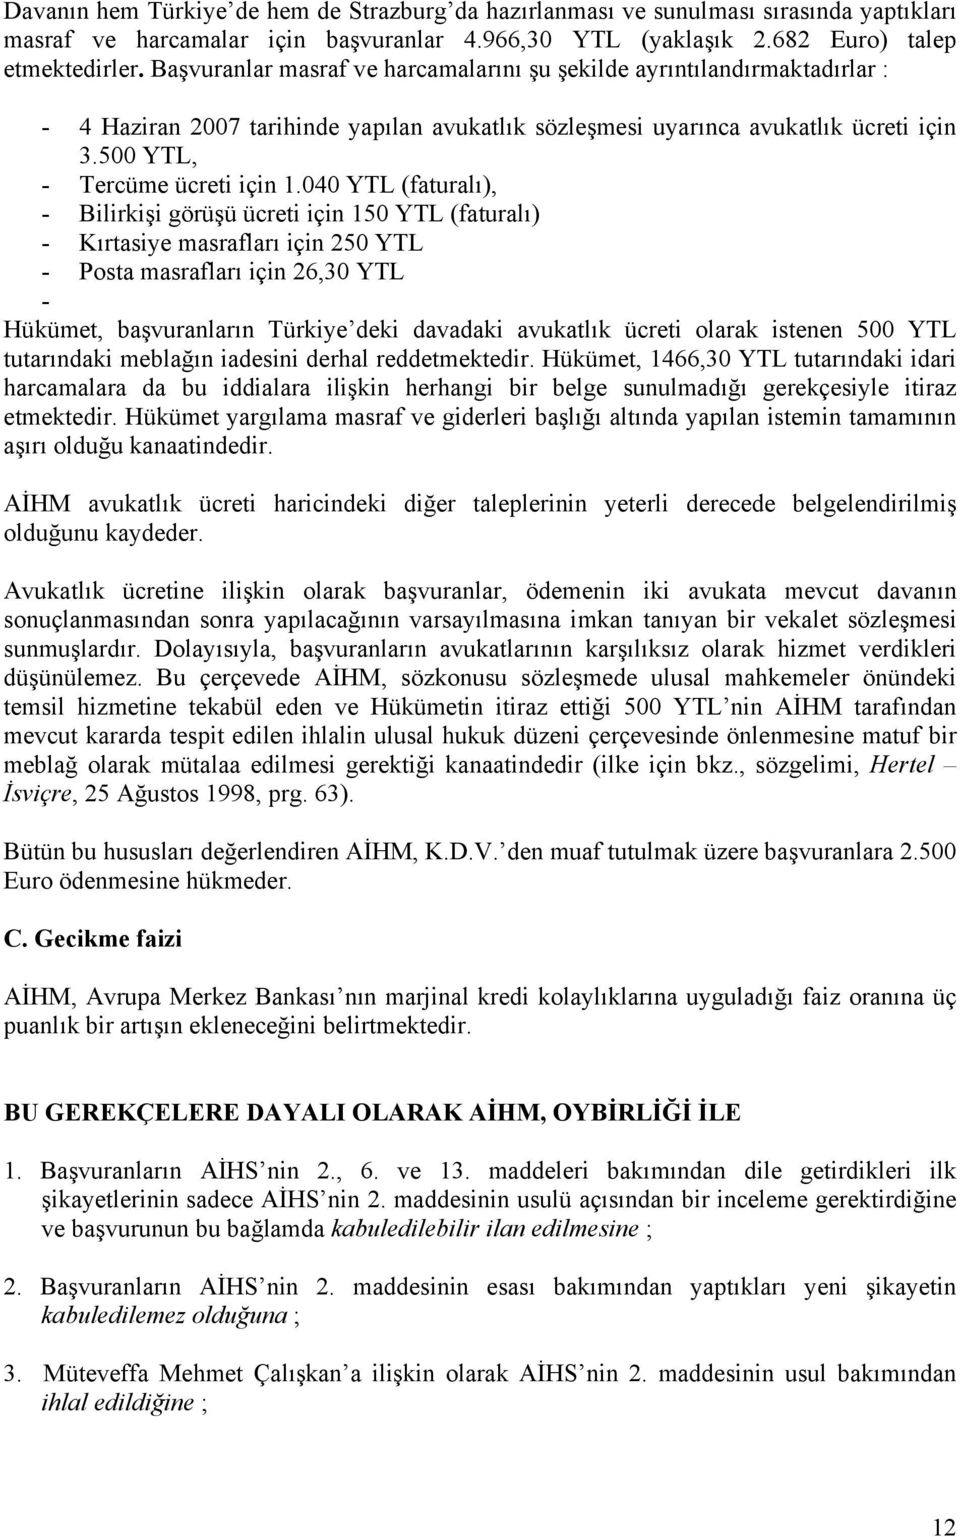 040 YTL (faturalı), - Bilirkişi görüşü ücreti için 150 YTL (faturalı) - Kırtasiye masrafları için 250 YTL - Posta masrafları için 26,30 YTL - Hükümet, başvuranların Türkiye deki davadaki avukatlık